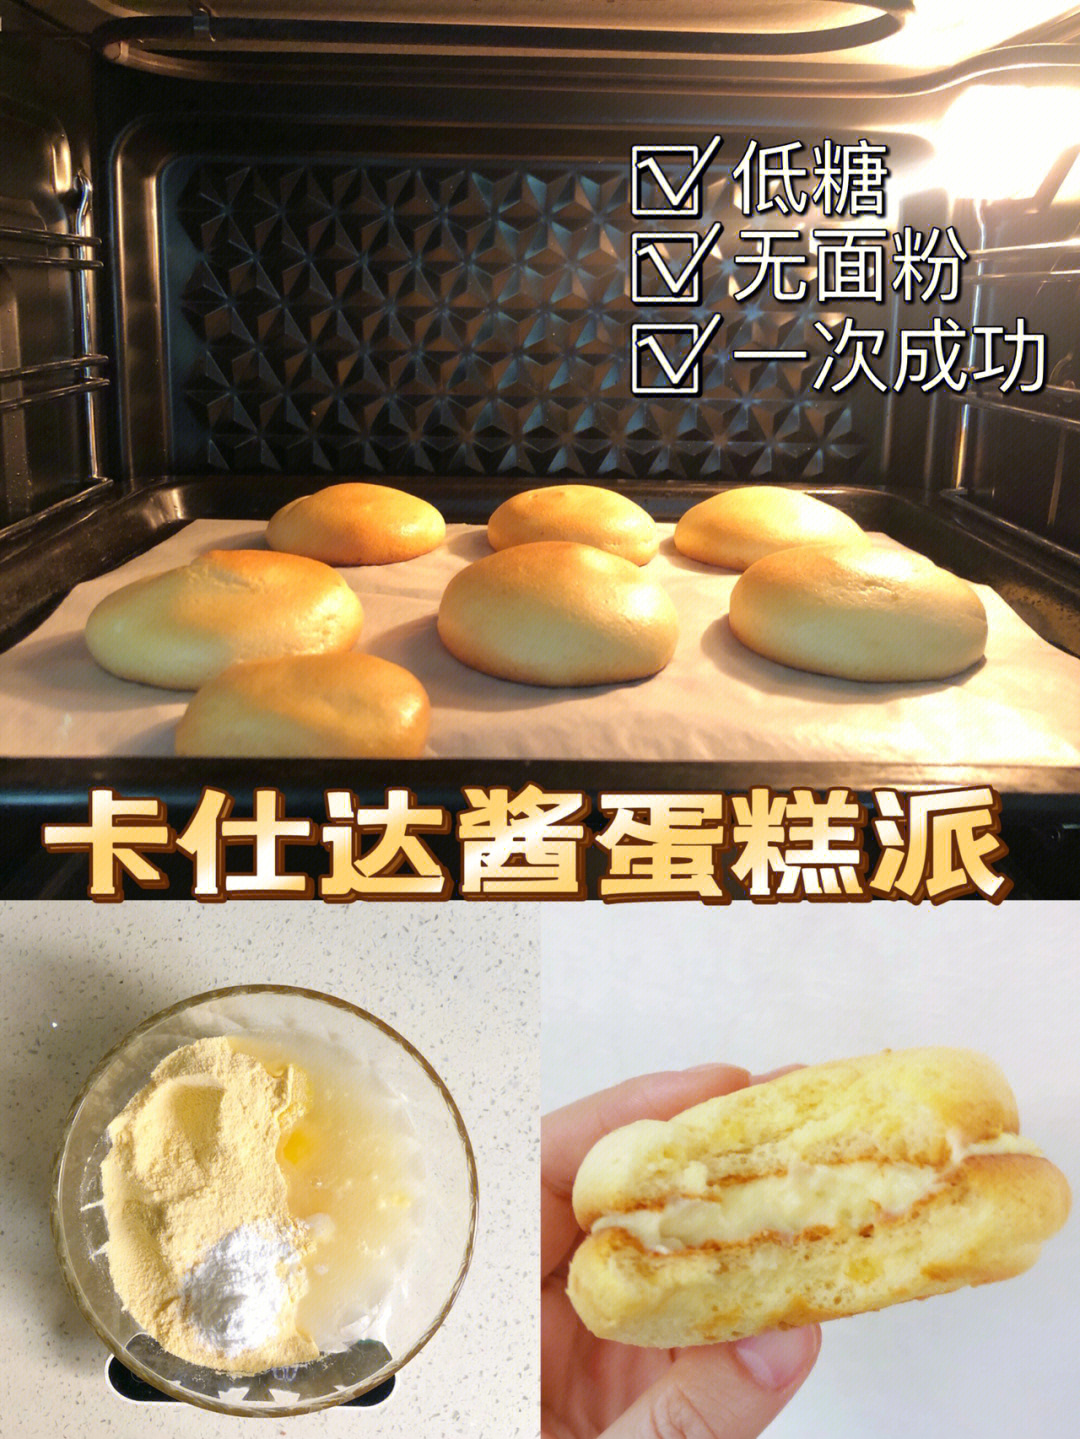 豆浆粉25g水20g鸡蛋2个玉米油18g代糖10g玉米淀粉6g低卡 卡仕达酱做法